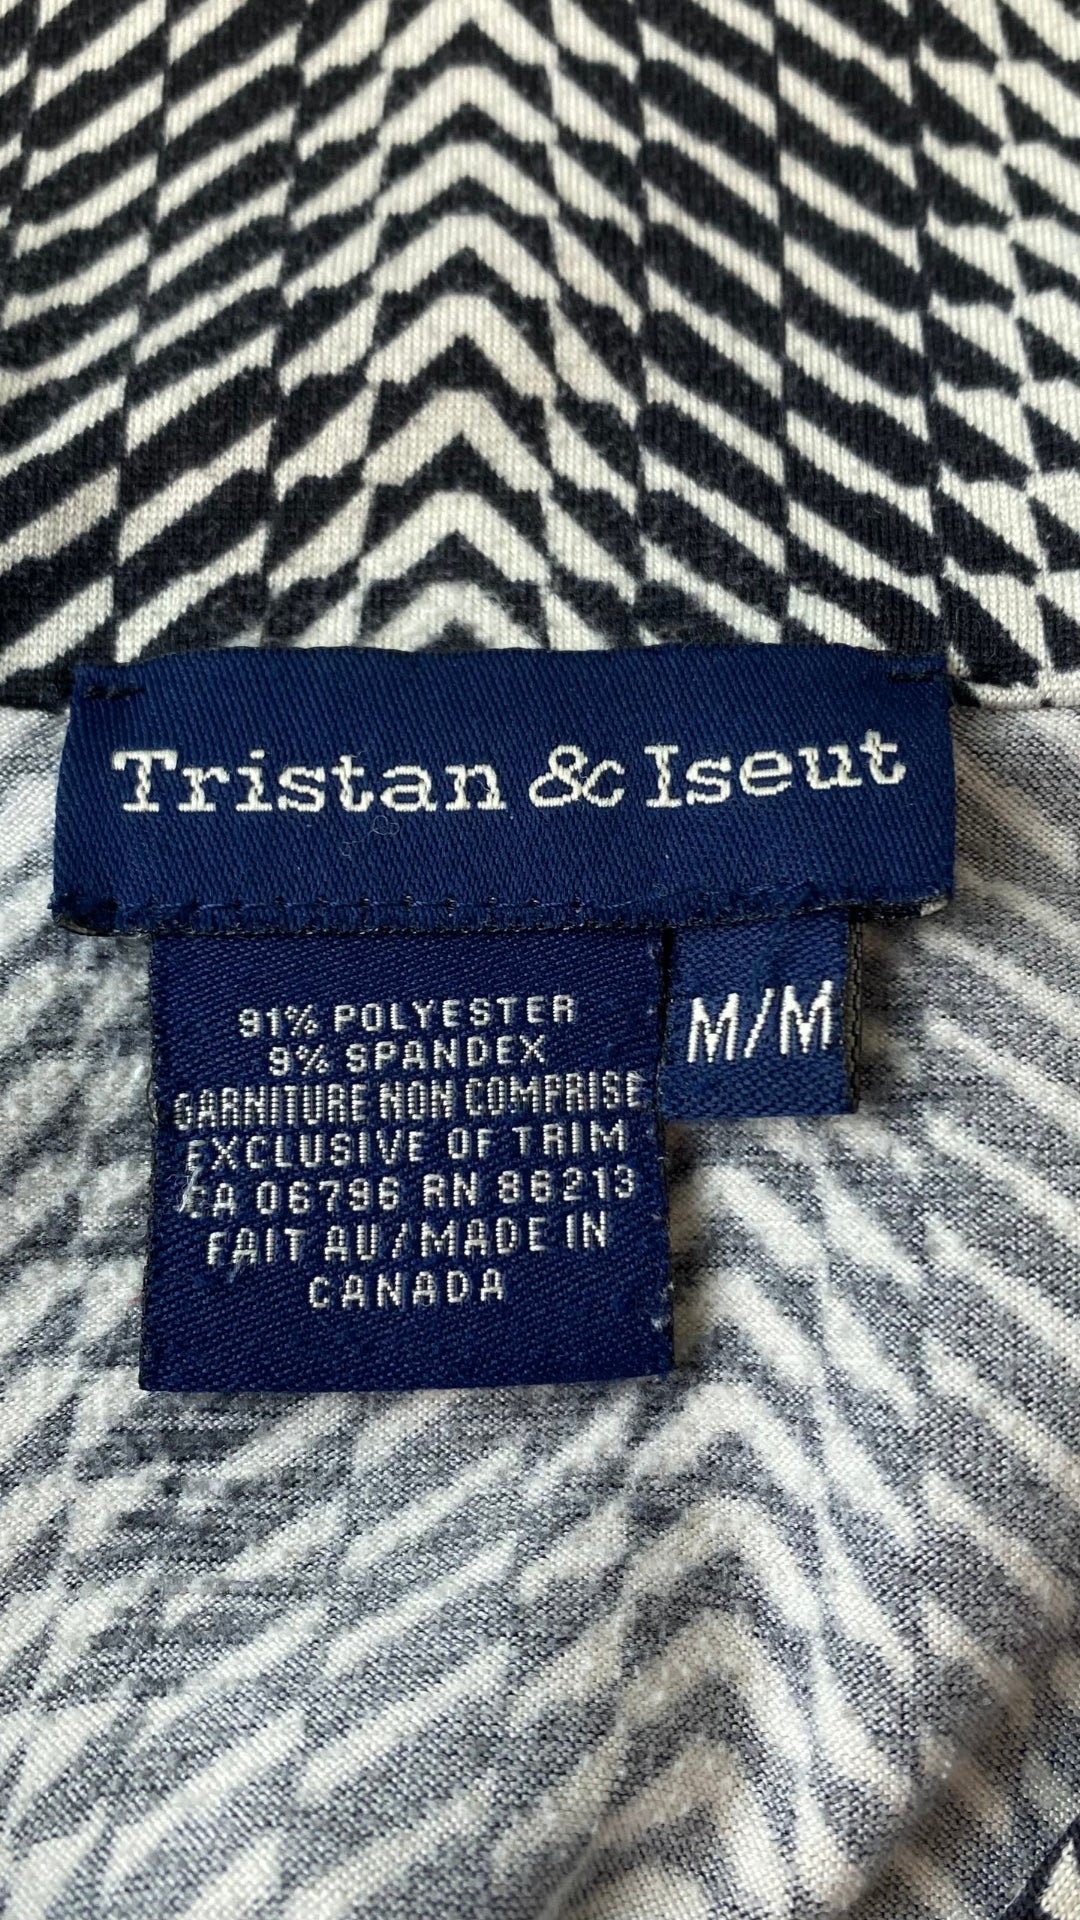 Polo vintage motif noir et crème Tristan & Iseut, medium. Vue de l'étiquette de marque, taille et composition.